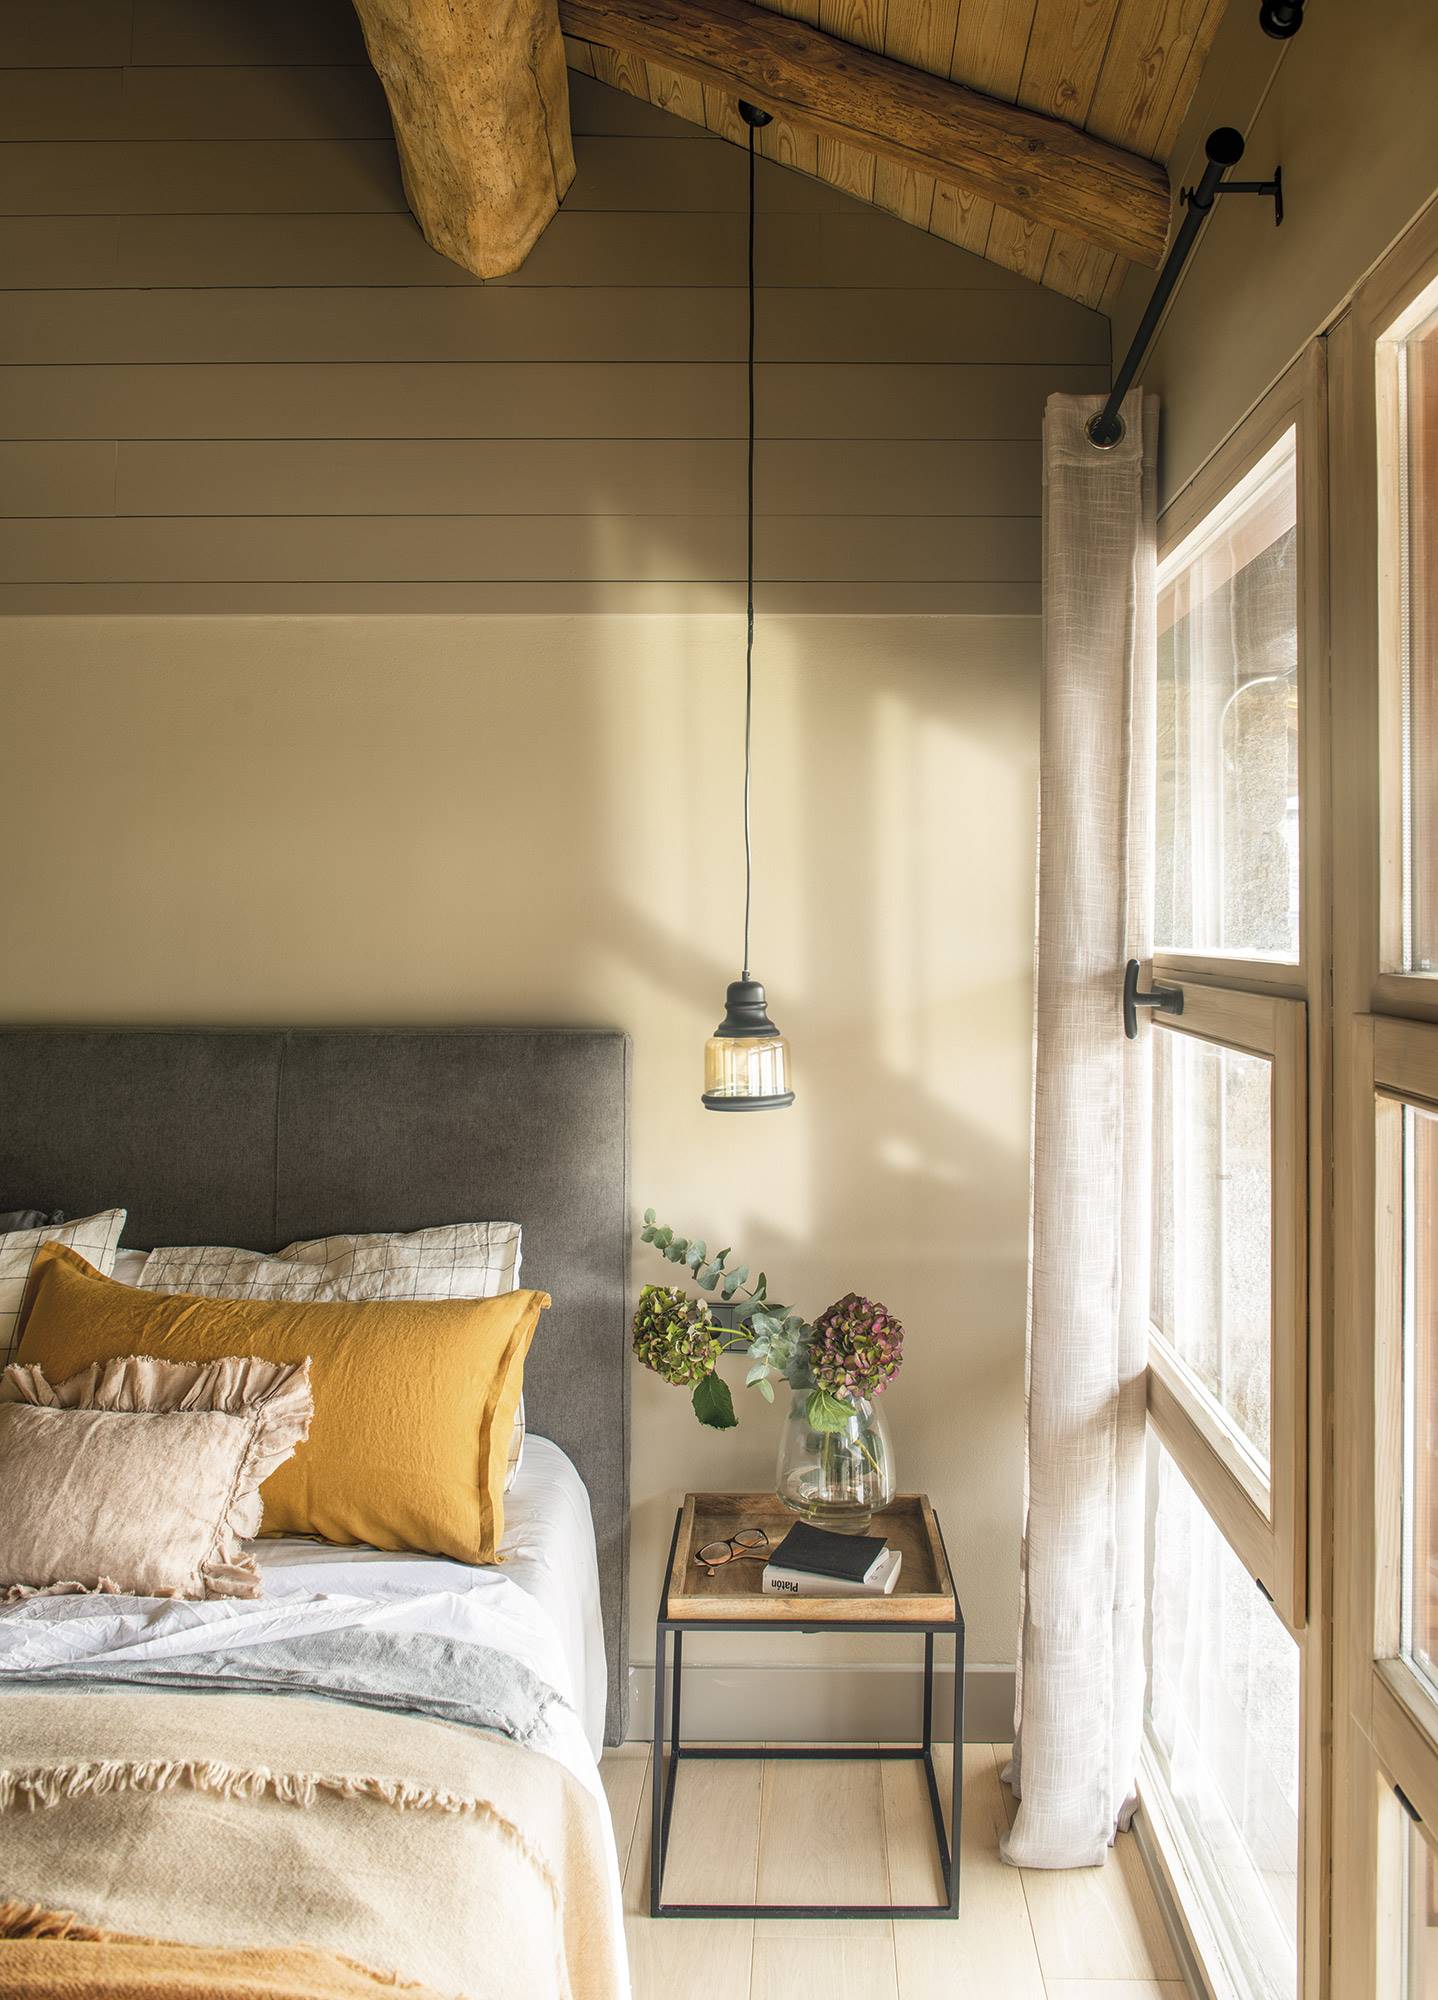 Dormitorio de estilo rústico con vigas de madera, cabecero tapizado de algodón gris y mesita de noche de madera.